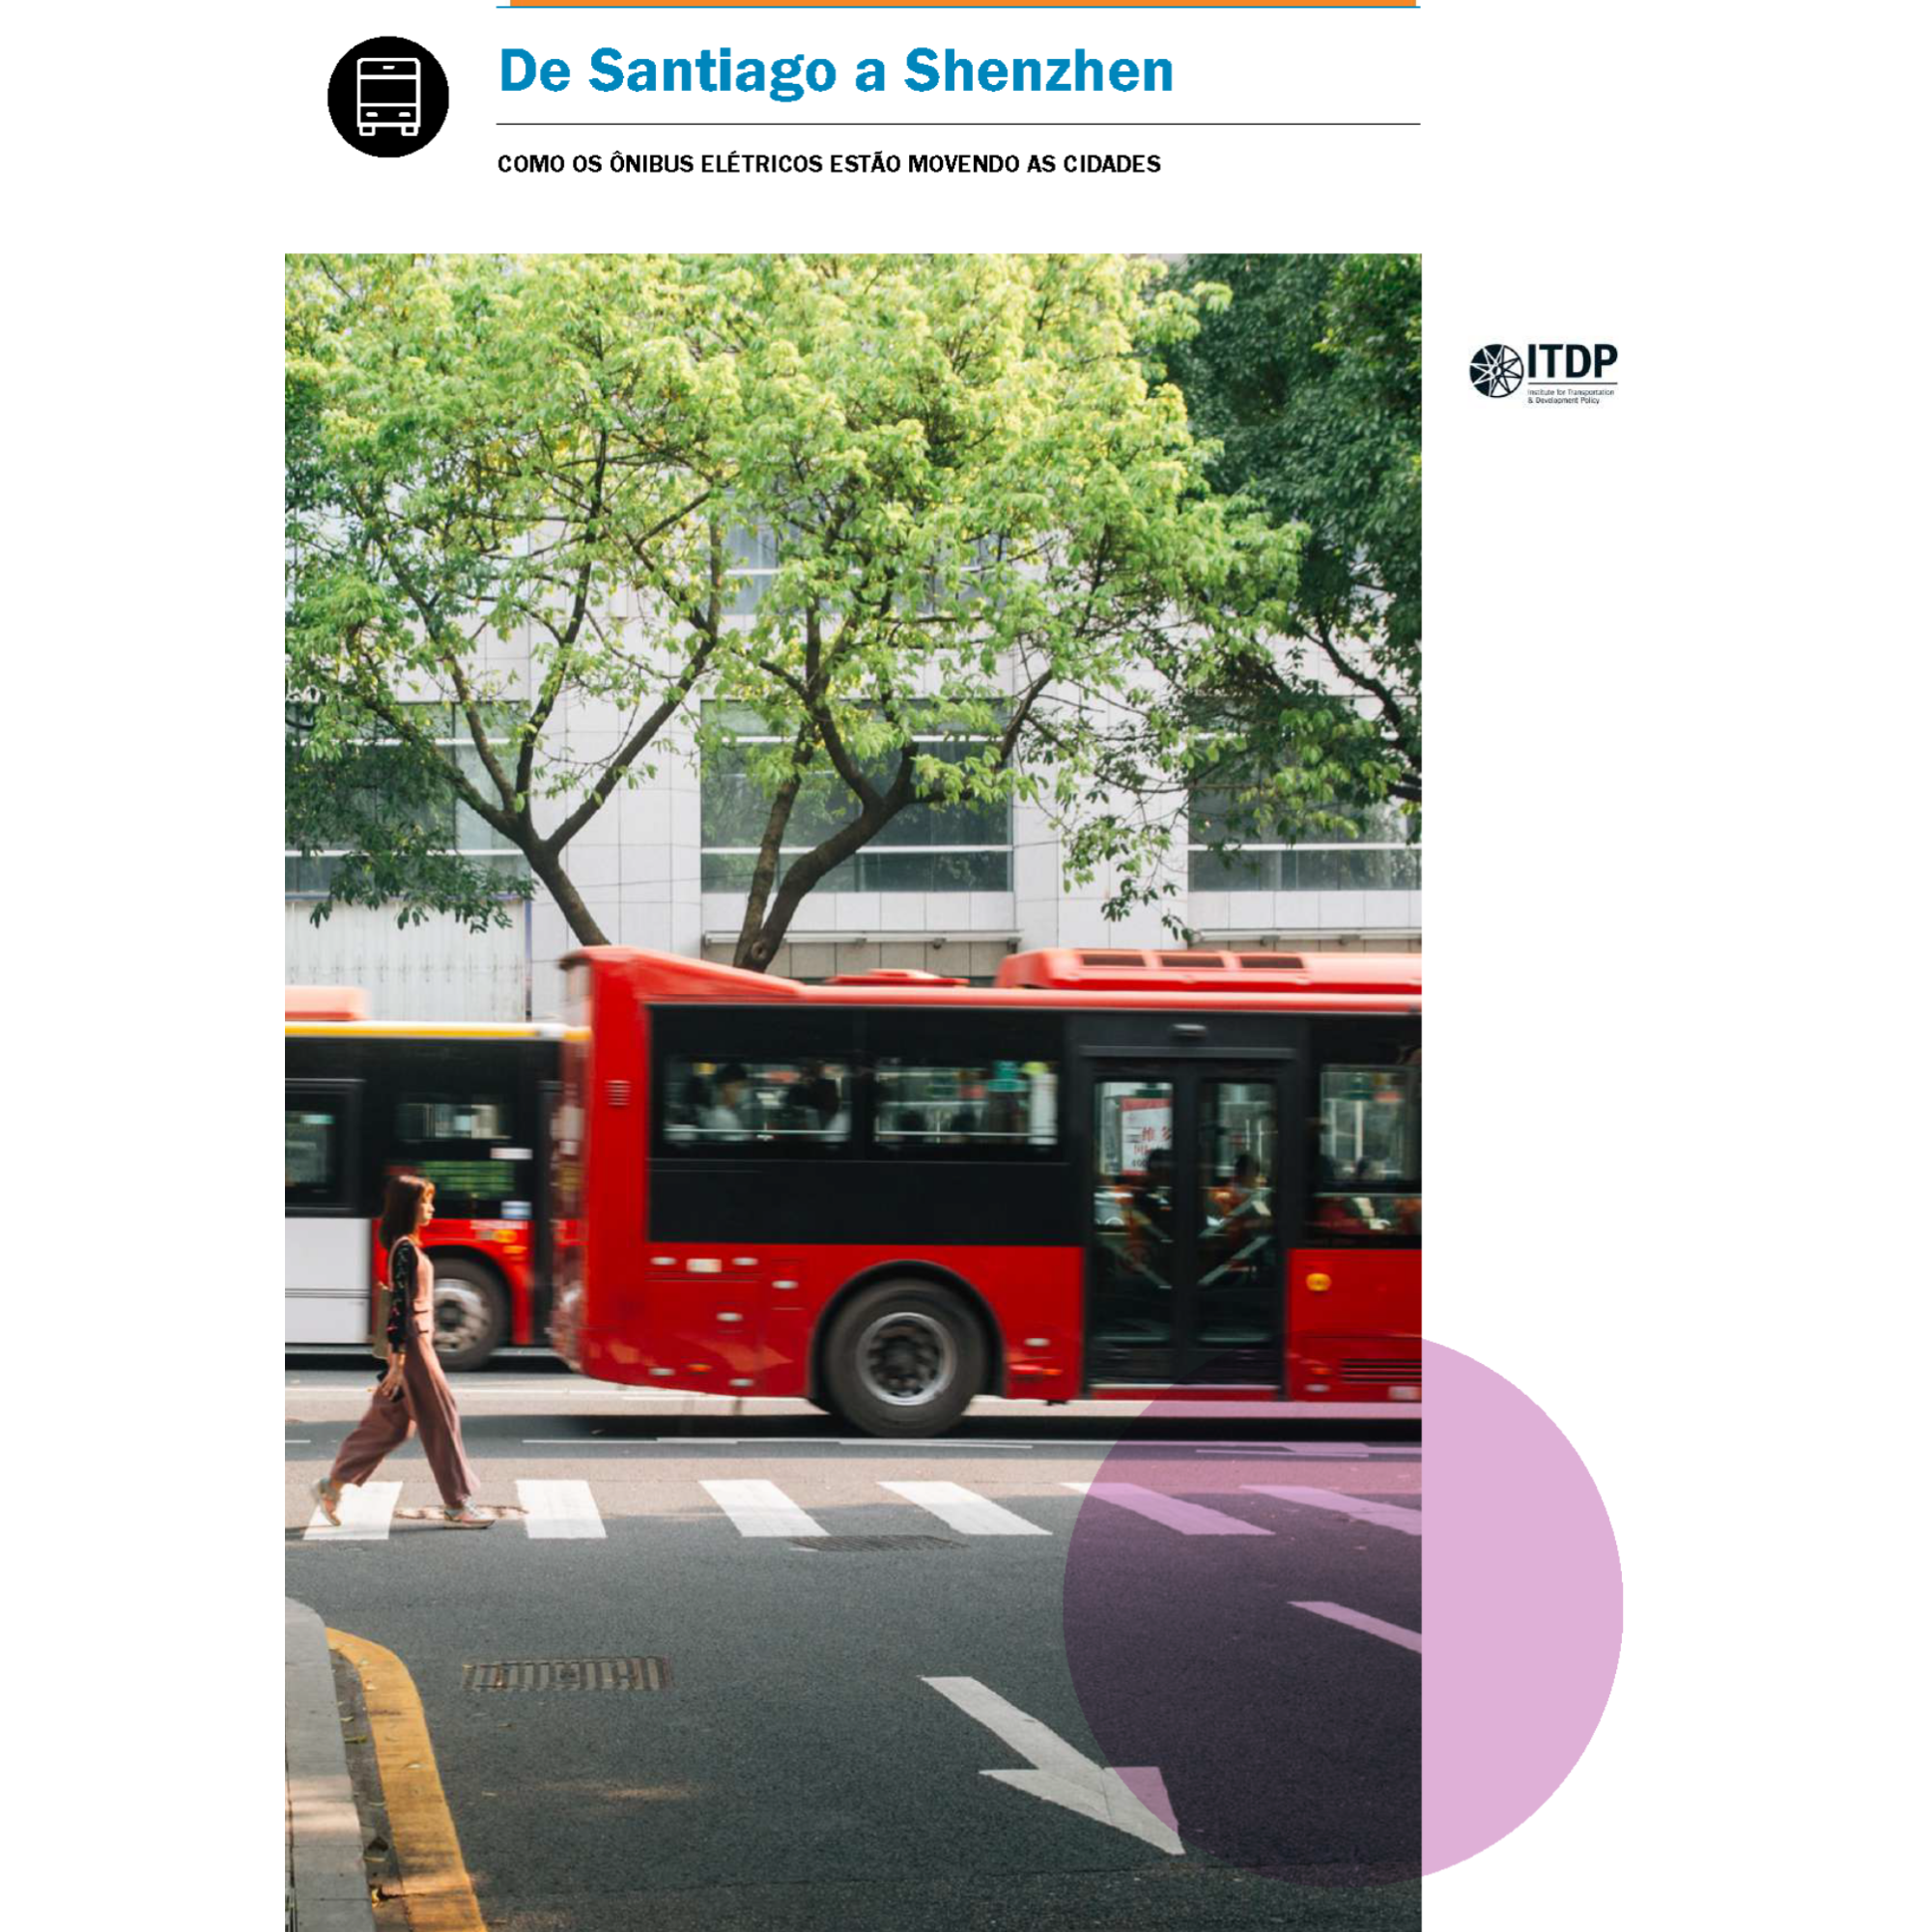 De Santiago a Shenzhen: como os ônibus elétricos estão movendo as cidades